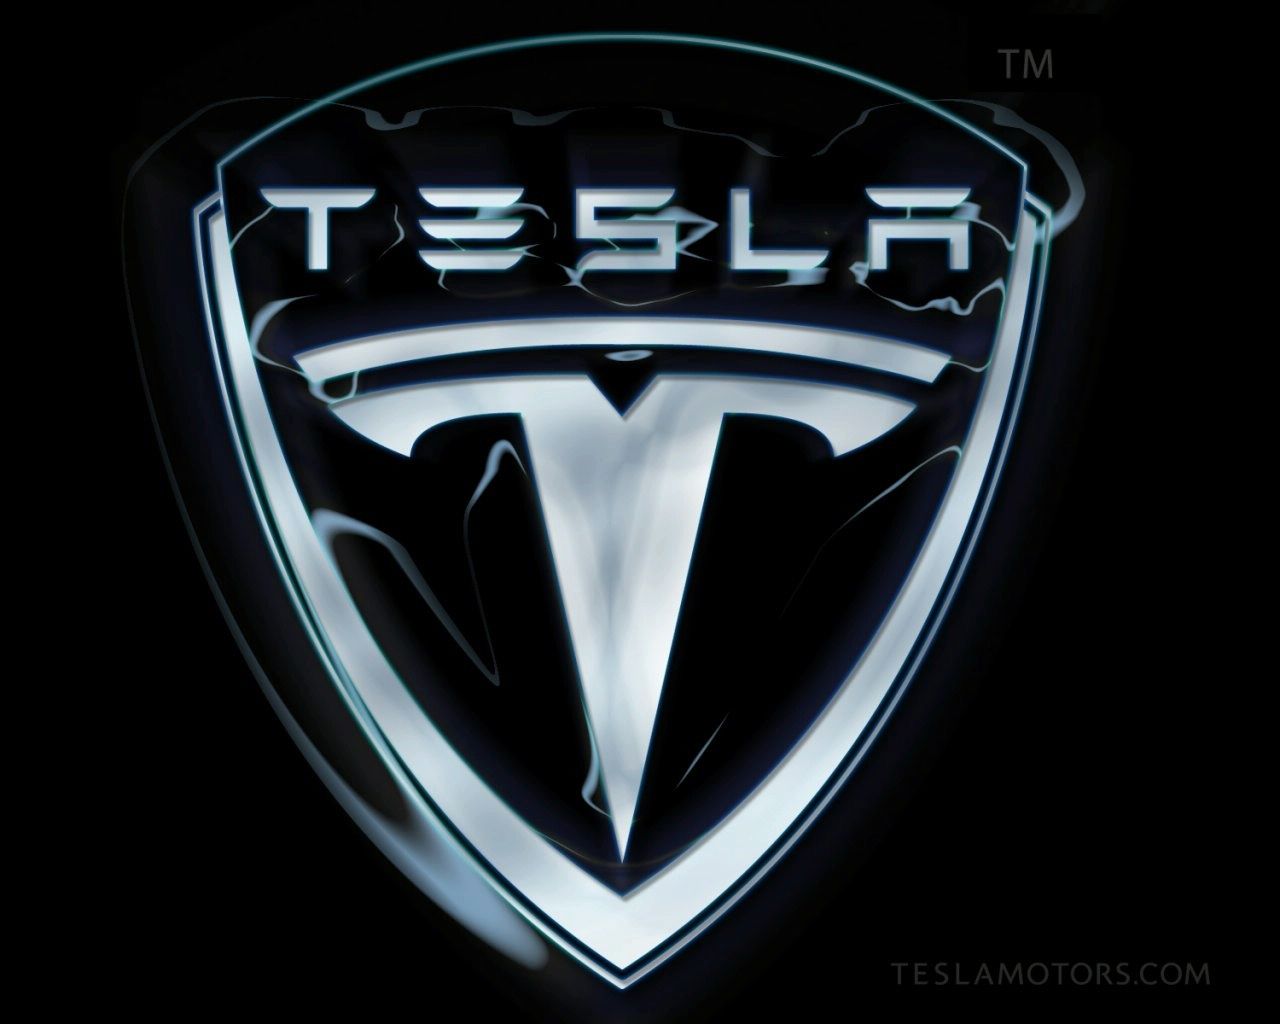 Tesla CEO plays down Apple acquisition talk IT PRO